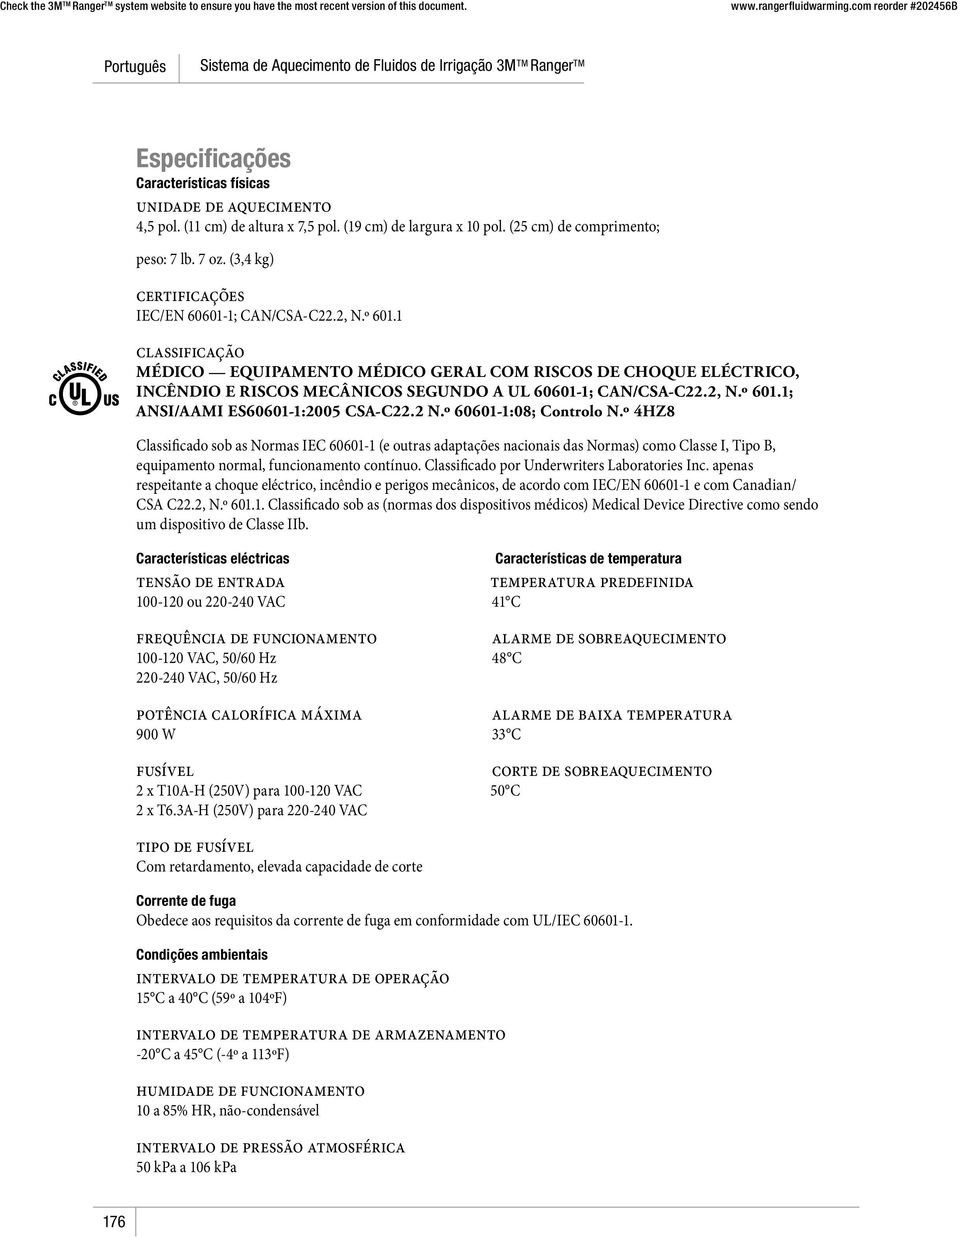 1 classificação MÉDICO EQUIPAMENTO MÉDICO GERAL COM RISCOS DE CHOQUE ELÉCTRICO, INCÊNDIO E RISCOS MECÂNICOS SEGUNDO A UL 60601-1; CAN/CSA-C22.2, N.º 601.1; ANSI/AAMI ES60601-1:2005 CSA-C22.2 N.